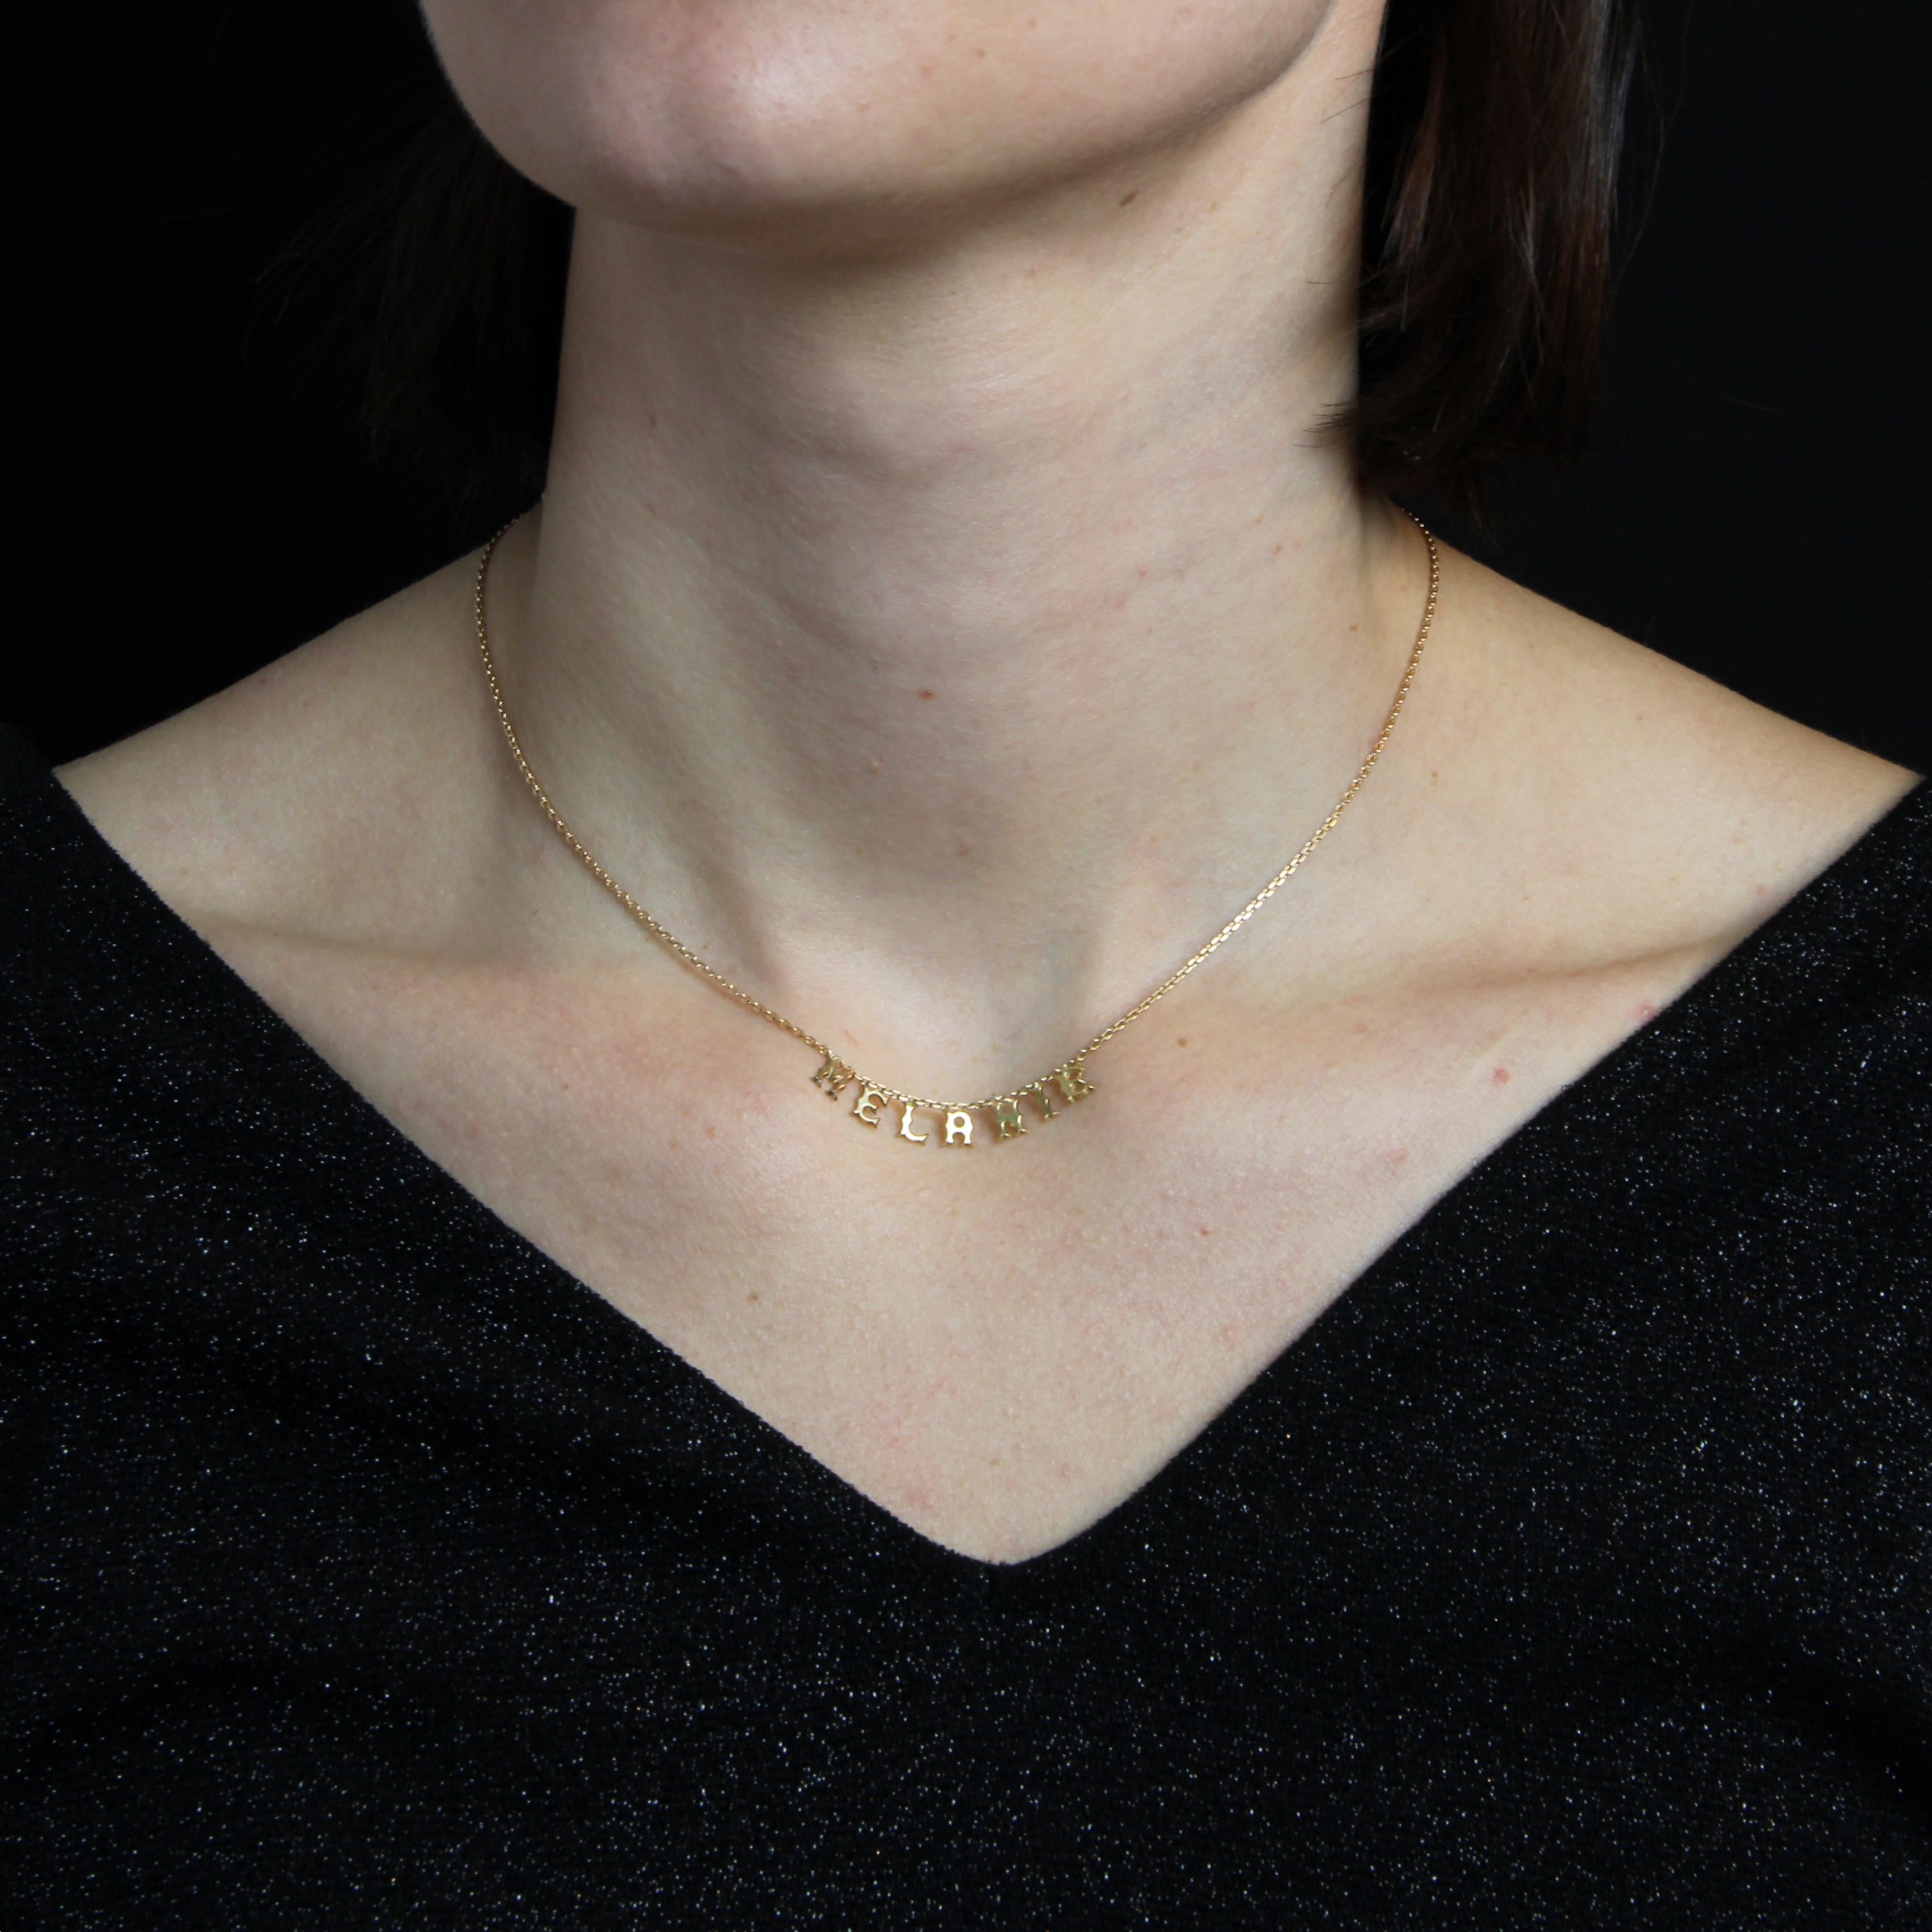 Halskette aus 18 Karat Roségold, Adlerkopfpunze.
Diese Halskette besteht aus einer Sträflingskette mit dem Vornamen Mélanie in der Mitte. Die Schließe ist ein Federring.
Länge : ca. 39,5 cm, Breite der Kette : ca. 1 mm, Buchstabenhöhe : ca. 5,6 mm,